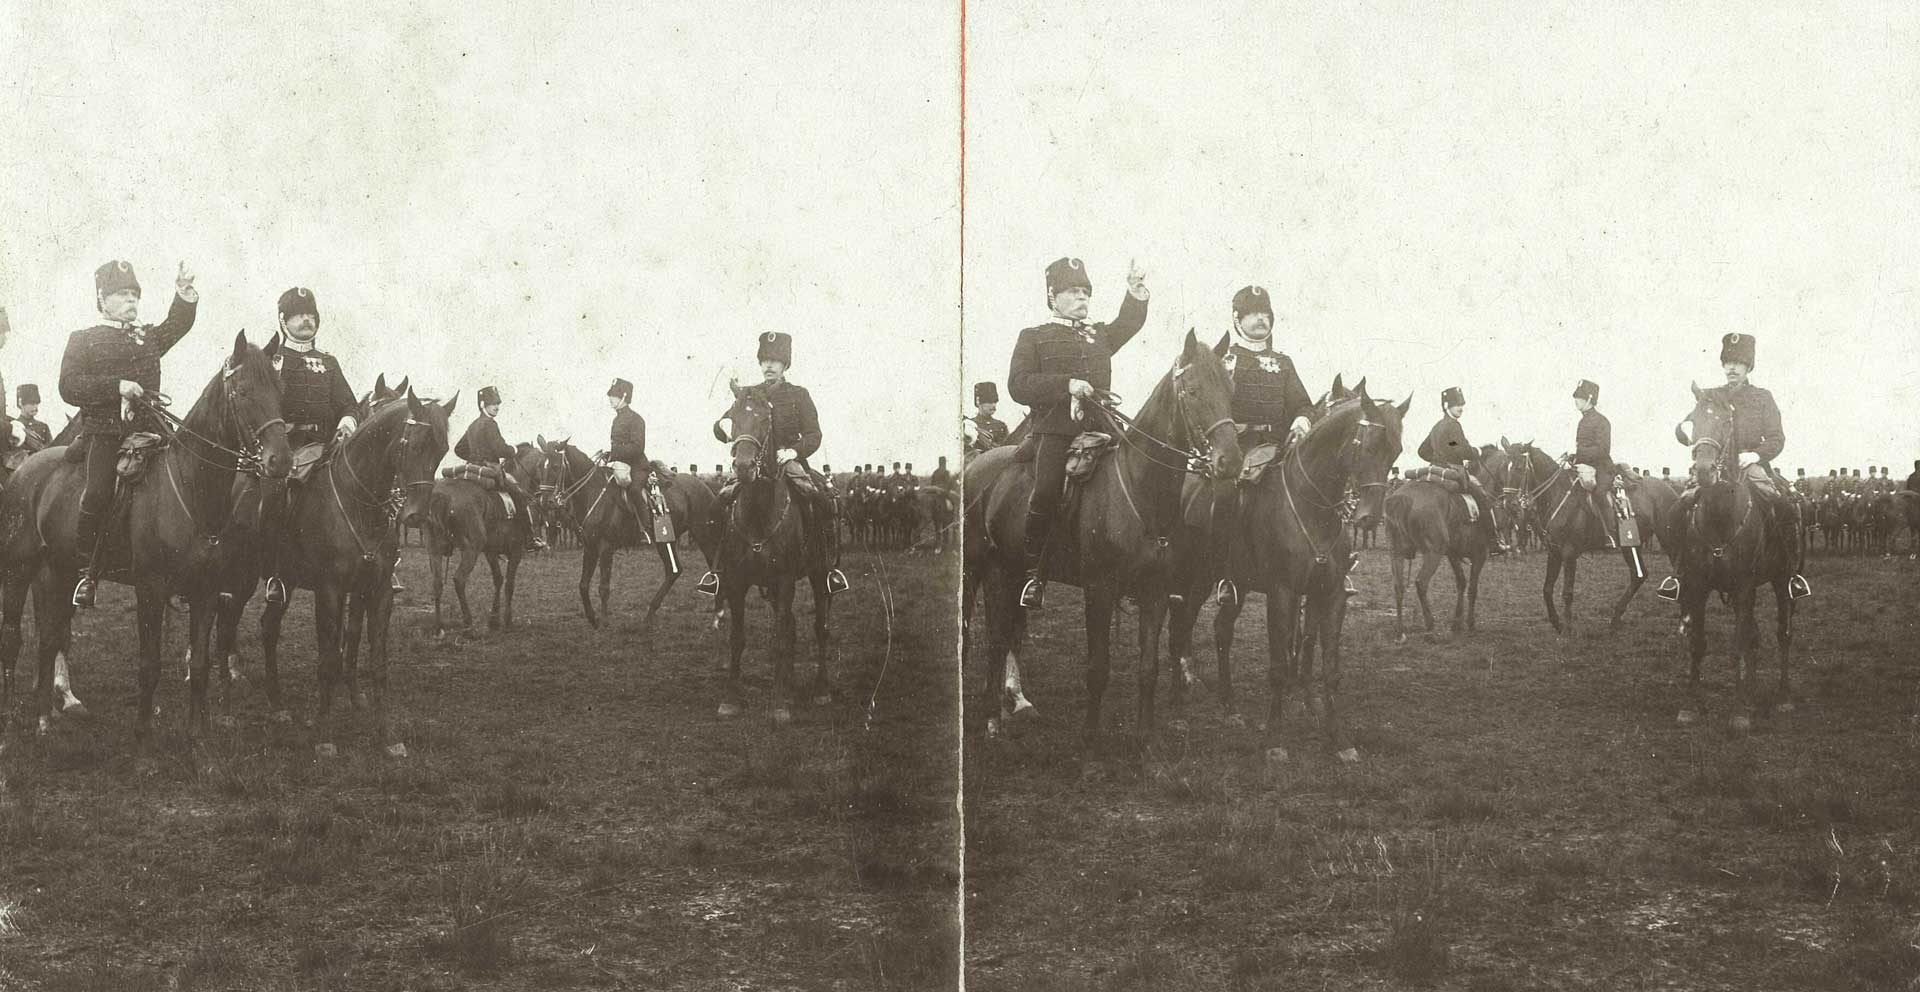 Ceremoniële bijeenkomst op de heide van cavalerie, c. 1900-1910 (Bron: Collectie Nederlands Instituut voor Militaire Historie nr. akl004026)